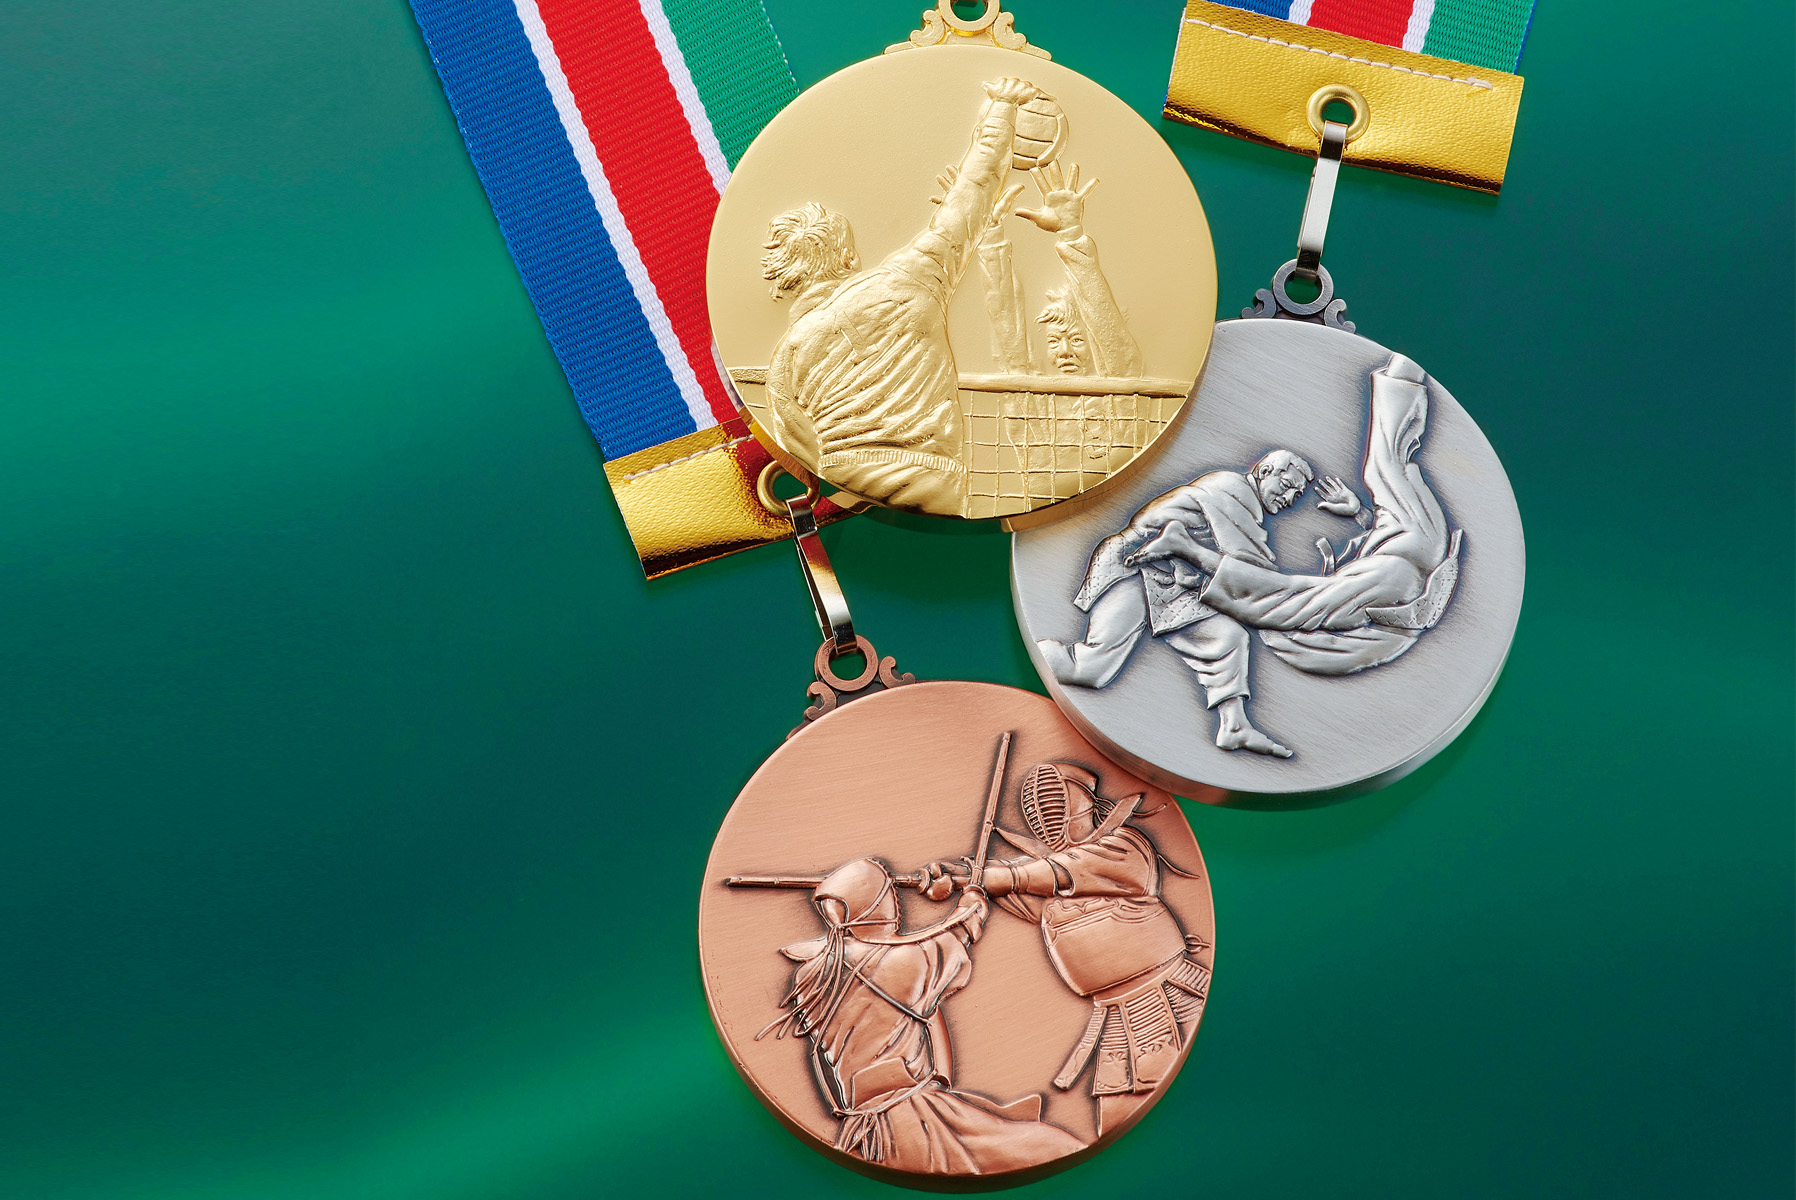 JAS-RLM-60 金メダル・銀メダル・銅メダルから選択可能な人気のミドルサイズメダル